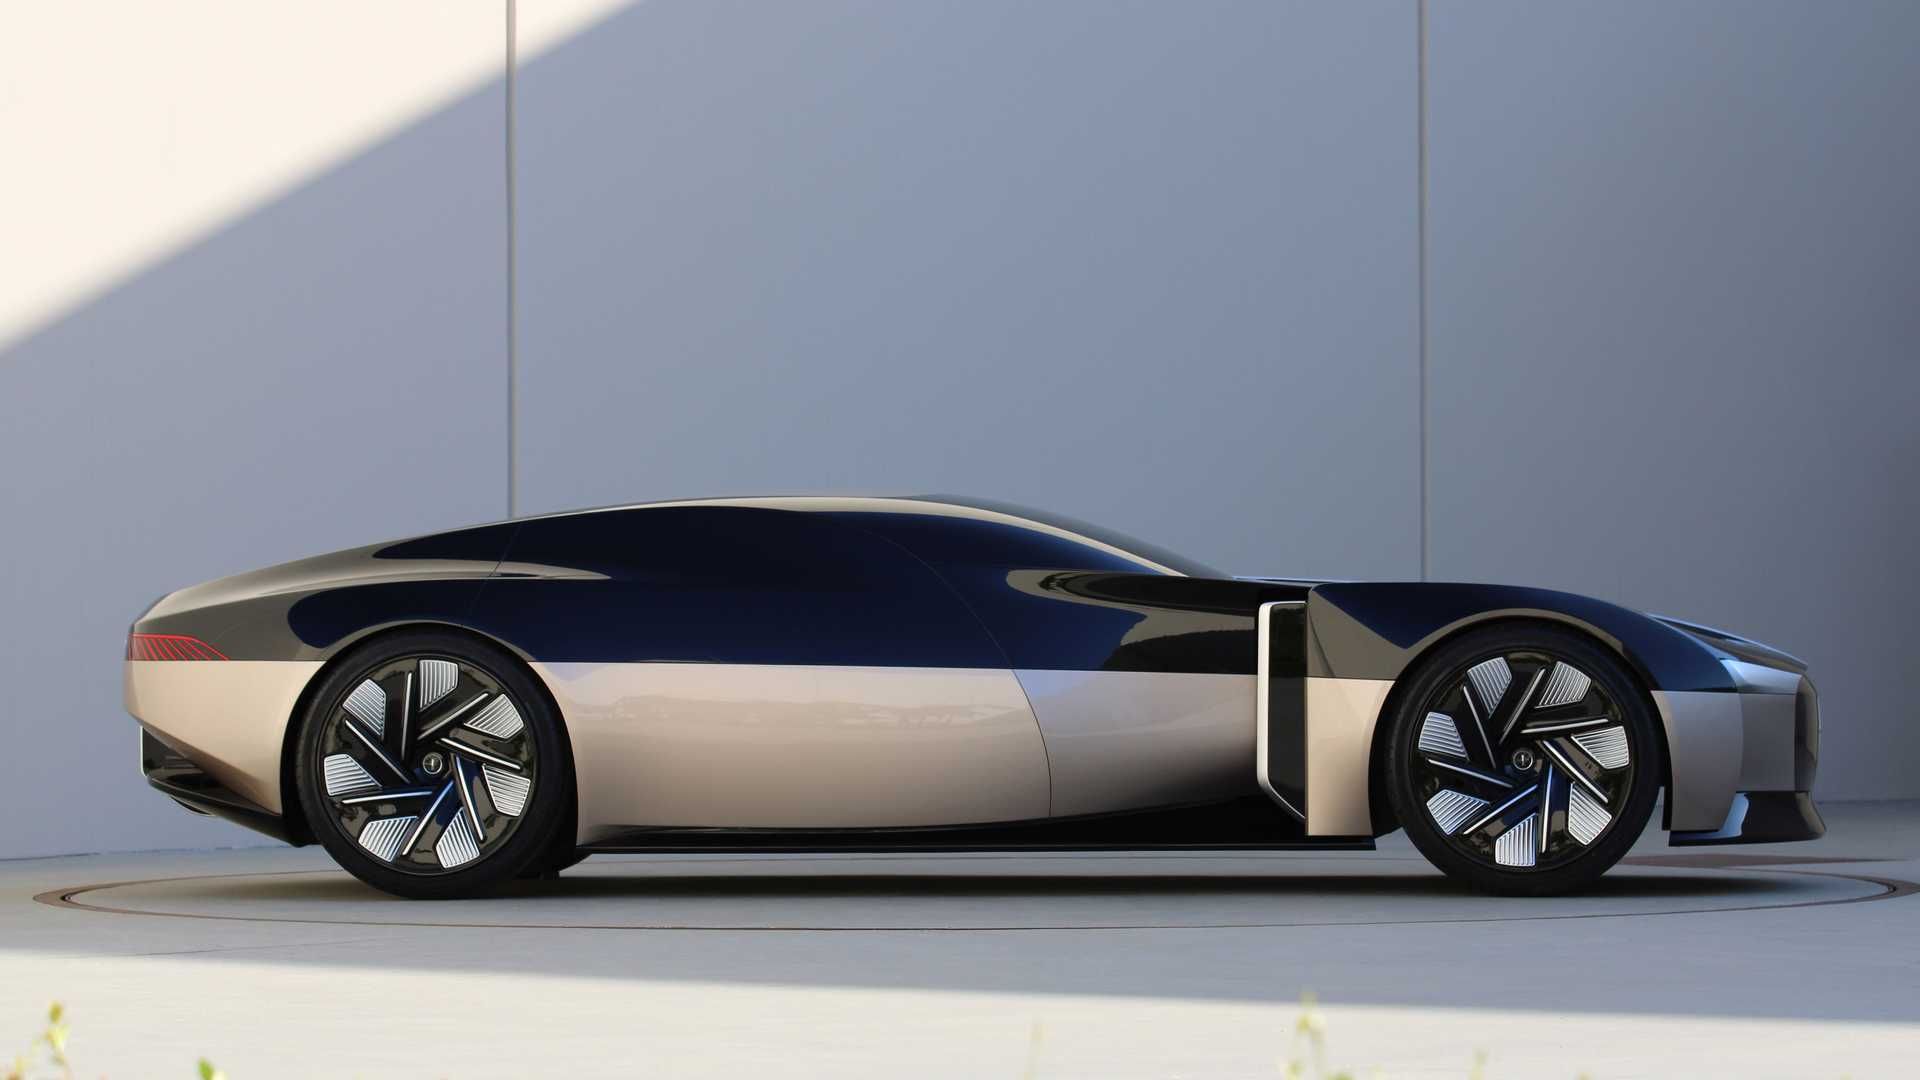 نمای جانبی خودروی مفهومی لینکلن انیورساری / Lincoln Anniversary Concept